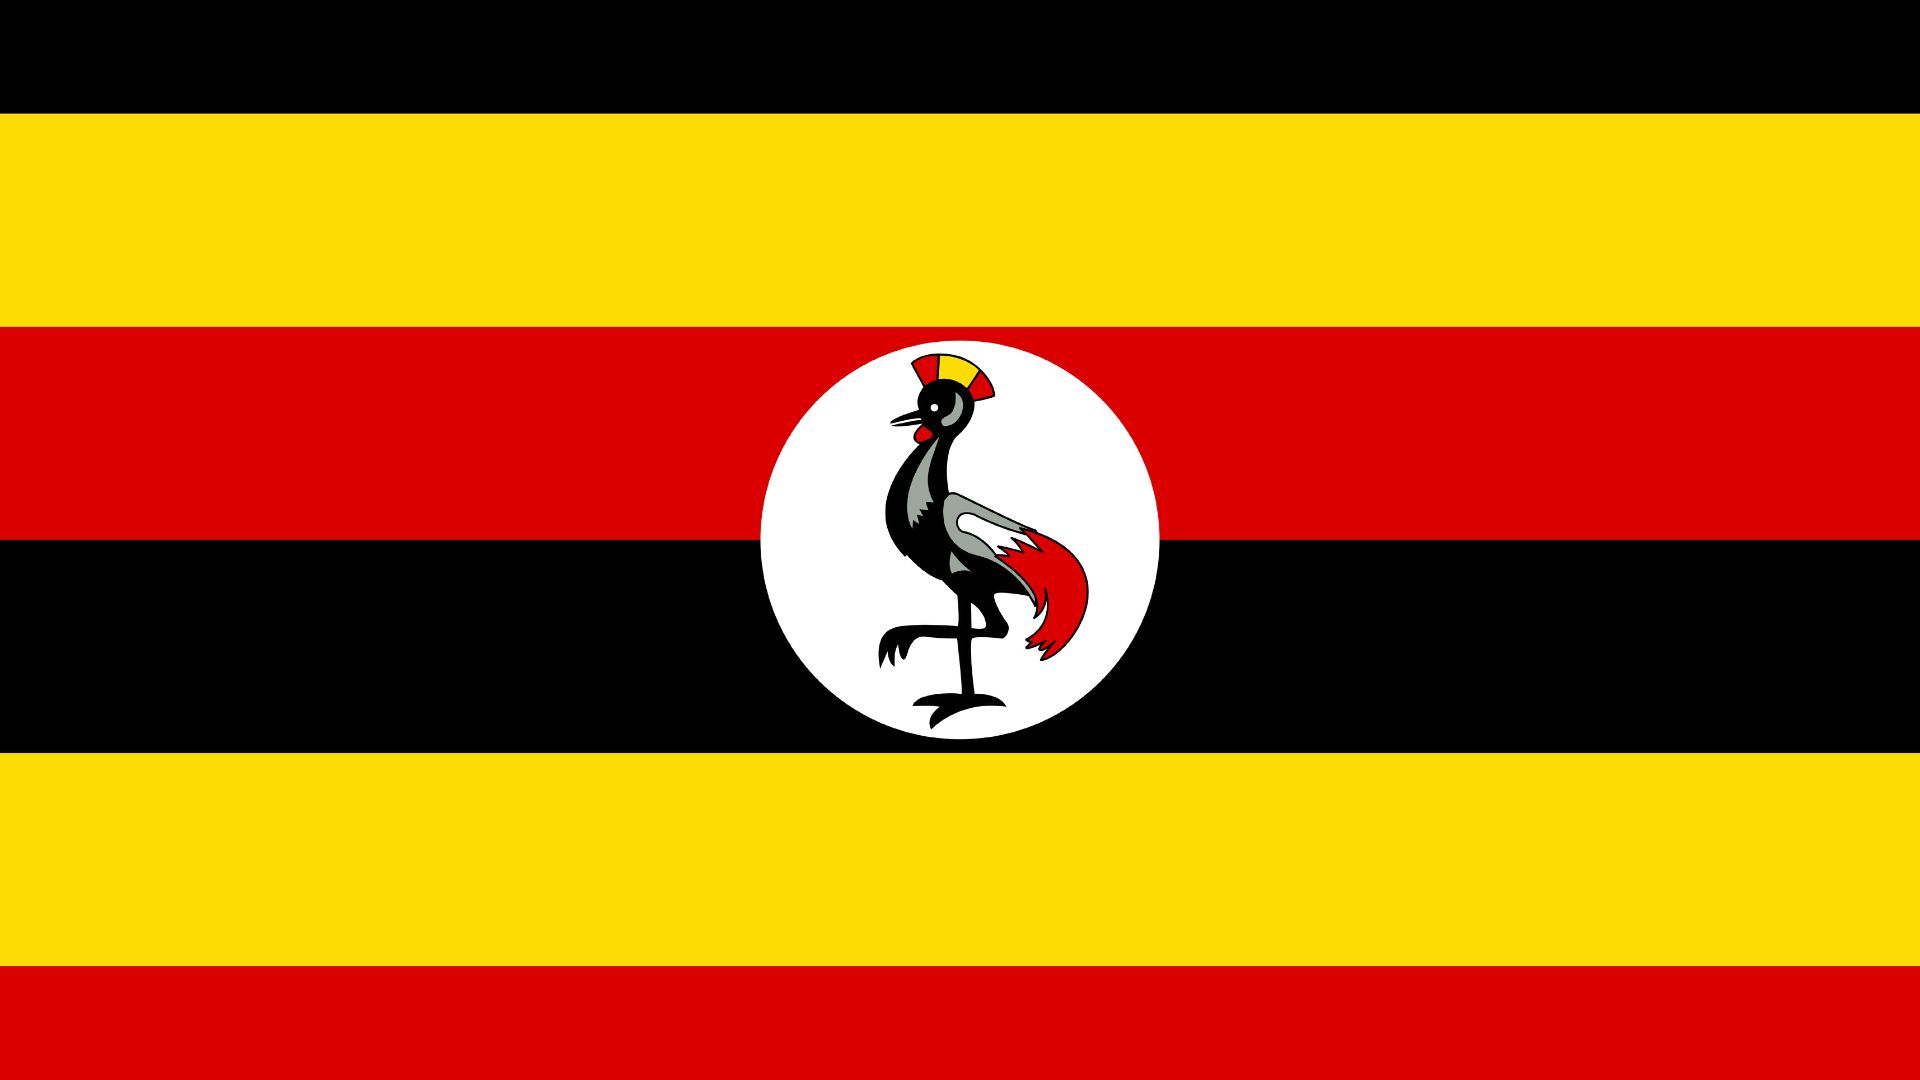 A bandeira da Uganda possui as cores: preto, amarelo e vermelho. No centro temos um brasão constituído de um grou-coroado-preto, ave conhecida no país por sua natureza bondosa e também era o emblema dos soldados ugandenses durante o domínio britânico.